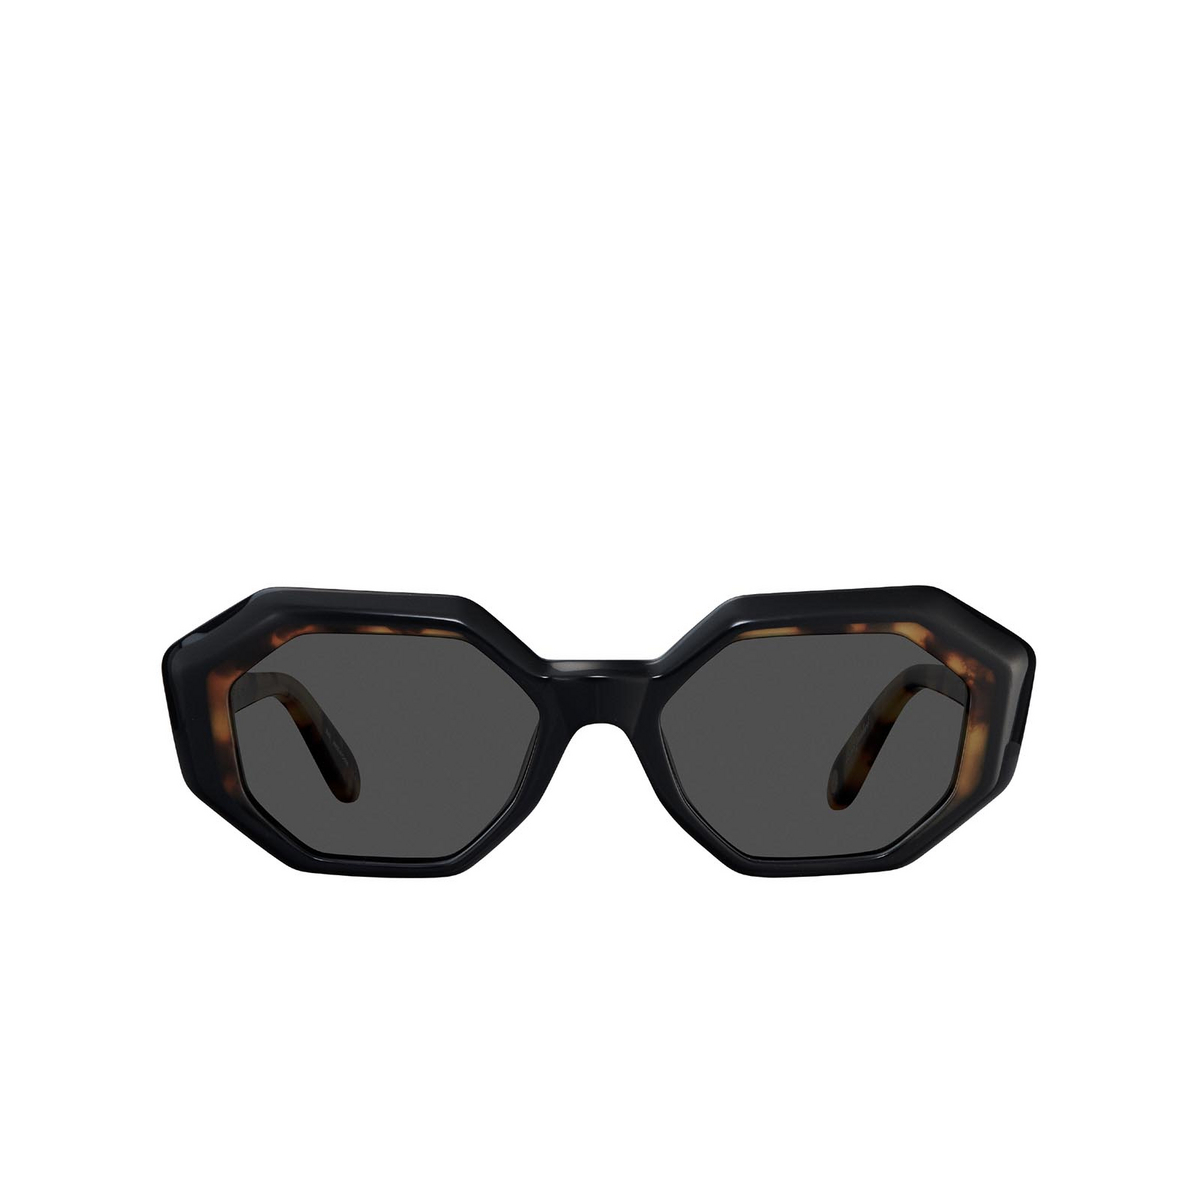 Garrett Leight JACQUELINE Sunglasses BK-DKT/SFBK Black-Dark Tortoise - front view